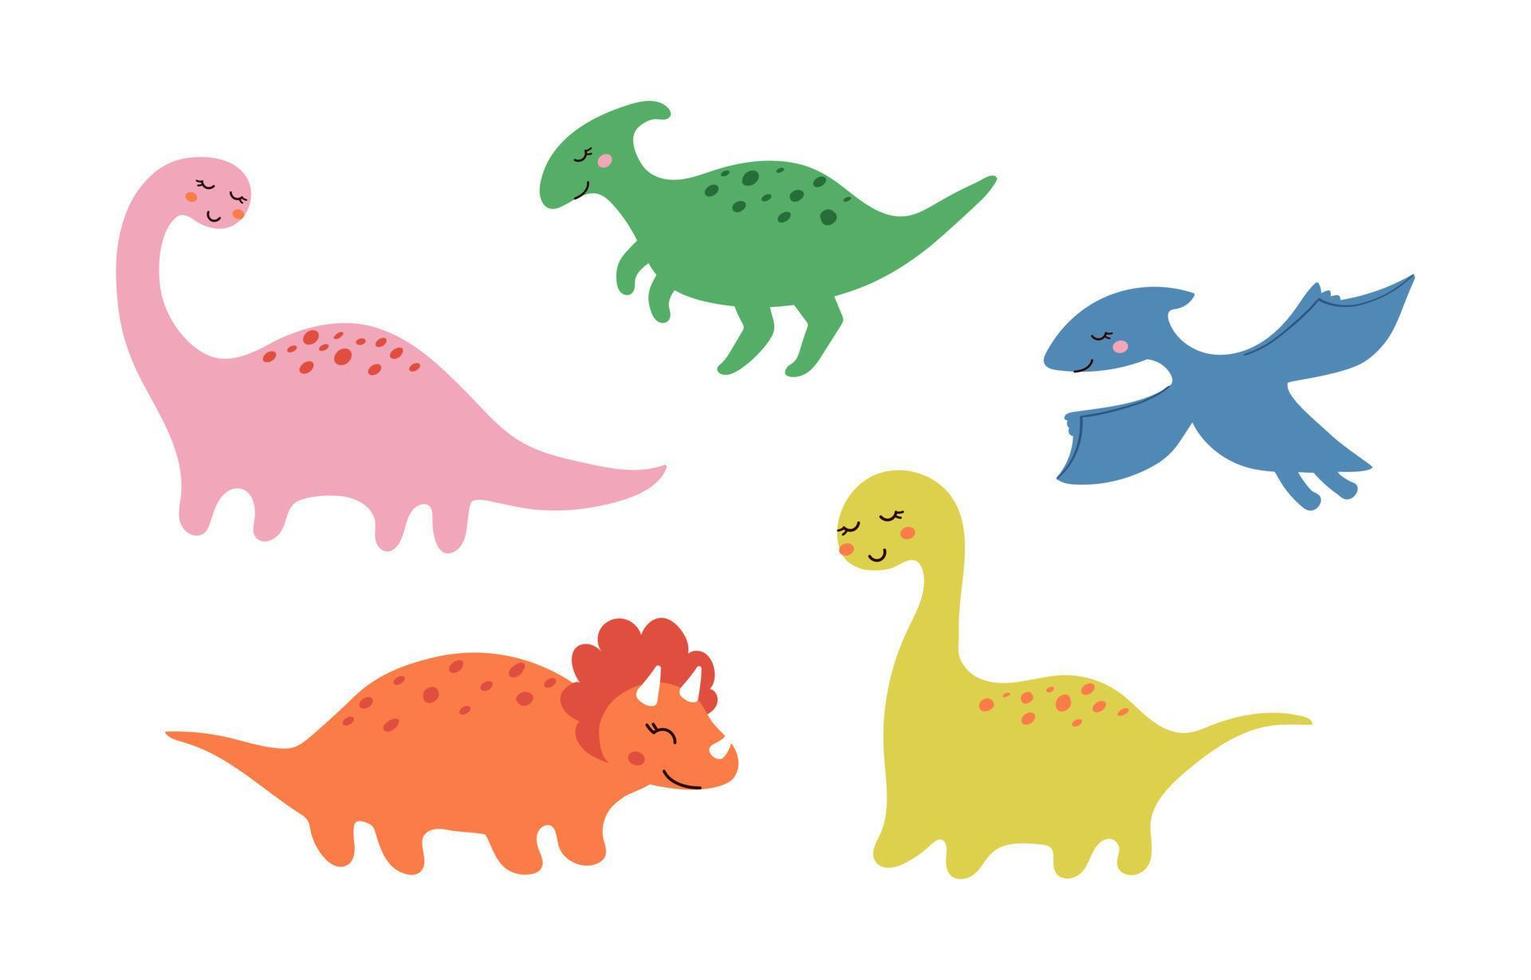 pequeño y lindo conjunto de dinosaurios sonrientes dibujado en estilo garabato. niños divertidos ilustraciones vectoriales de animales prehistóricos para imprimir en pegatinas, postales, textiles, juegos vector